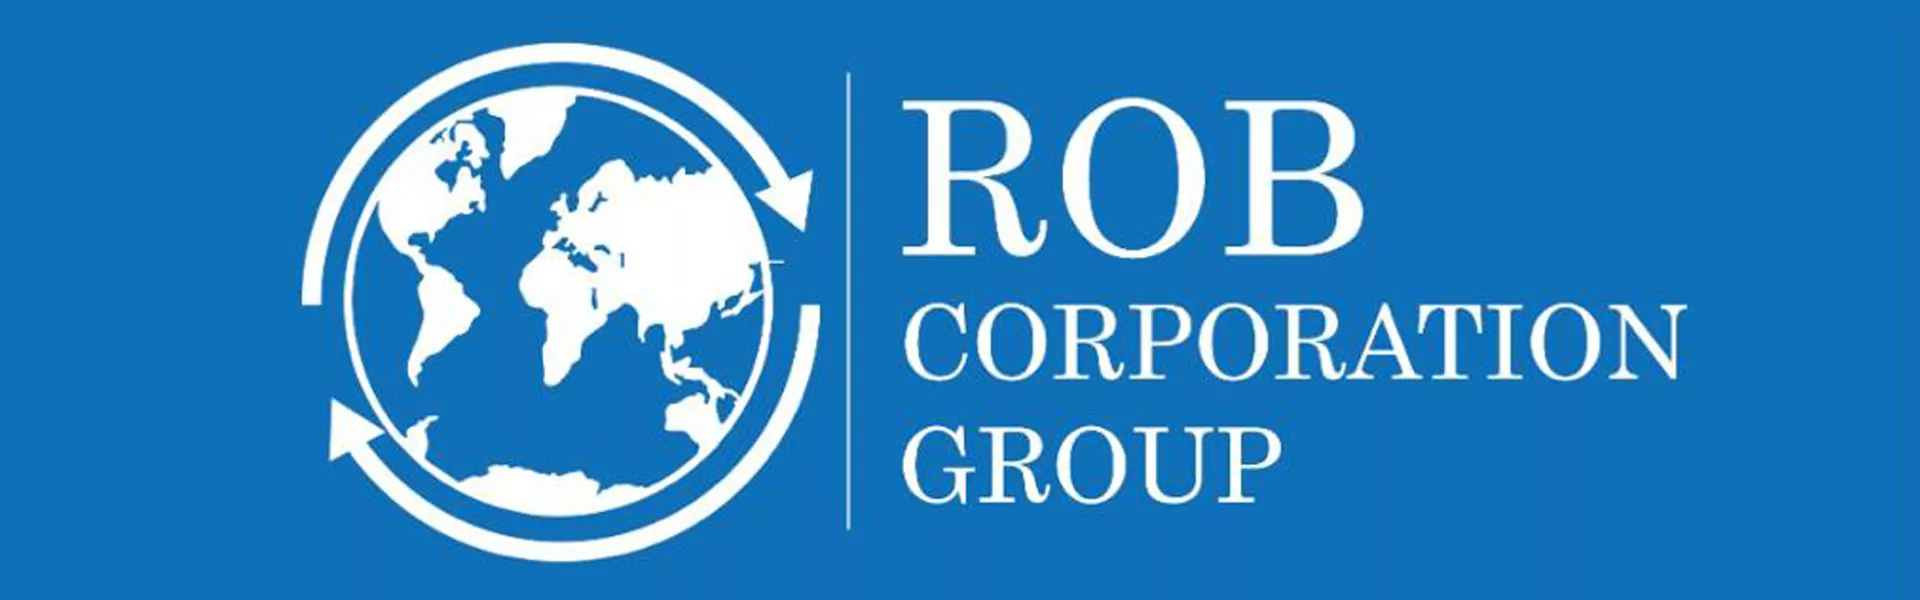 ROB Corporation Group recherche un ingénieur en génie civil capable de monter de dossier pour les appels d’offre, Niamey, Niger